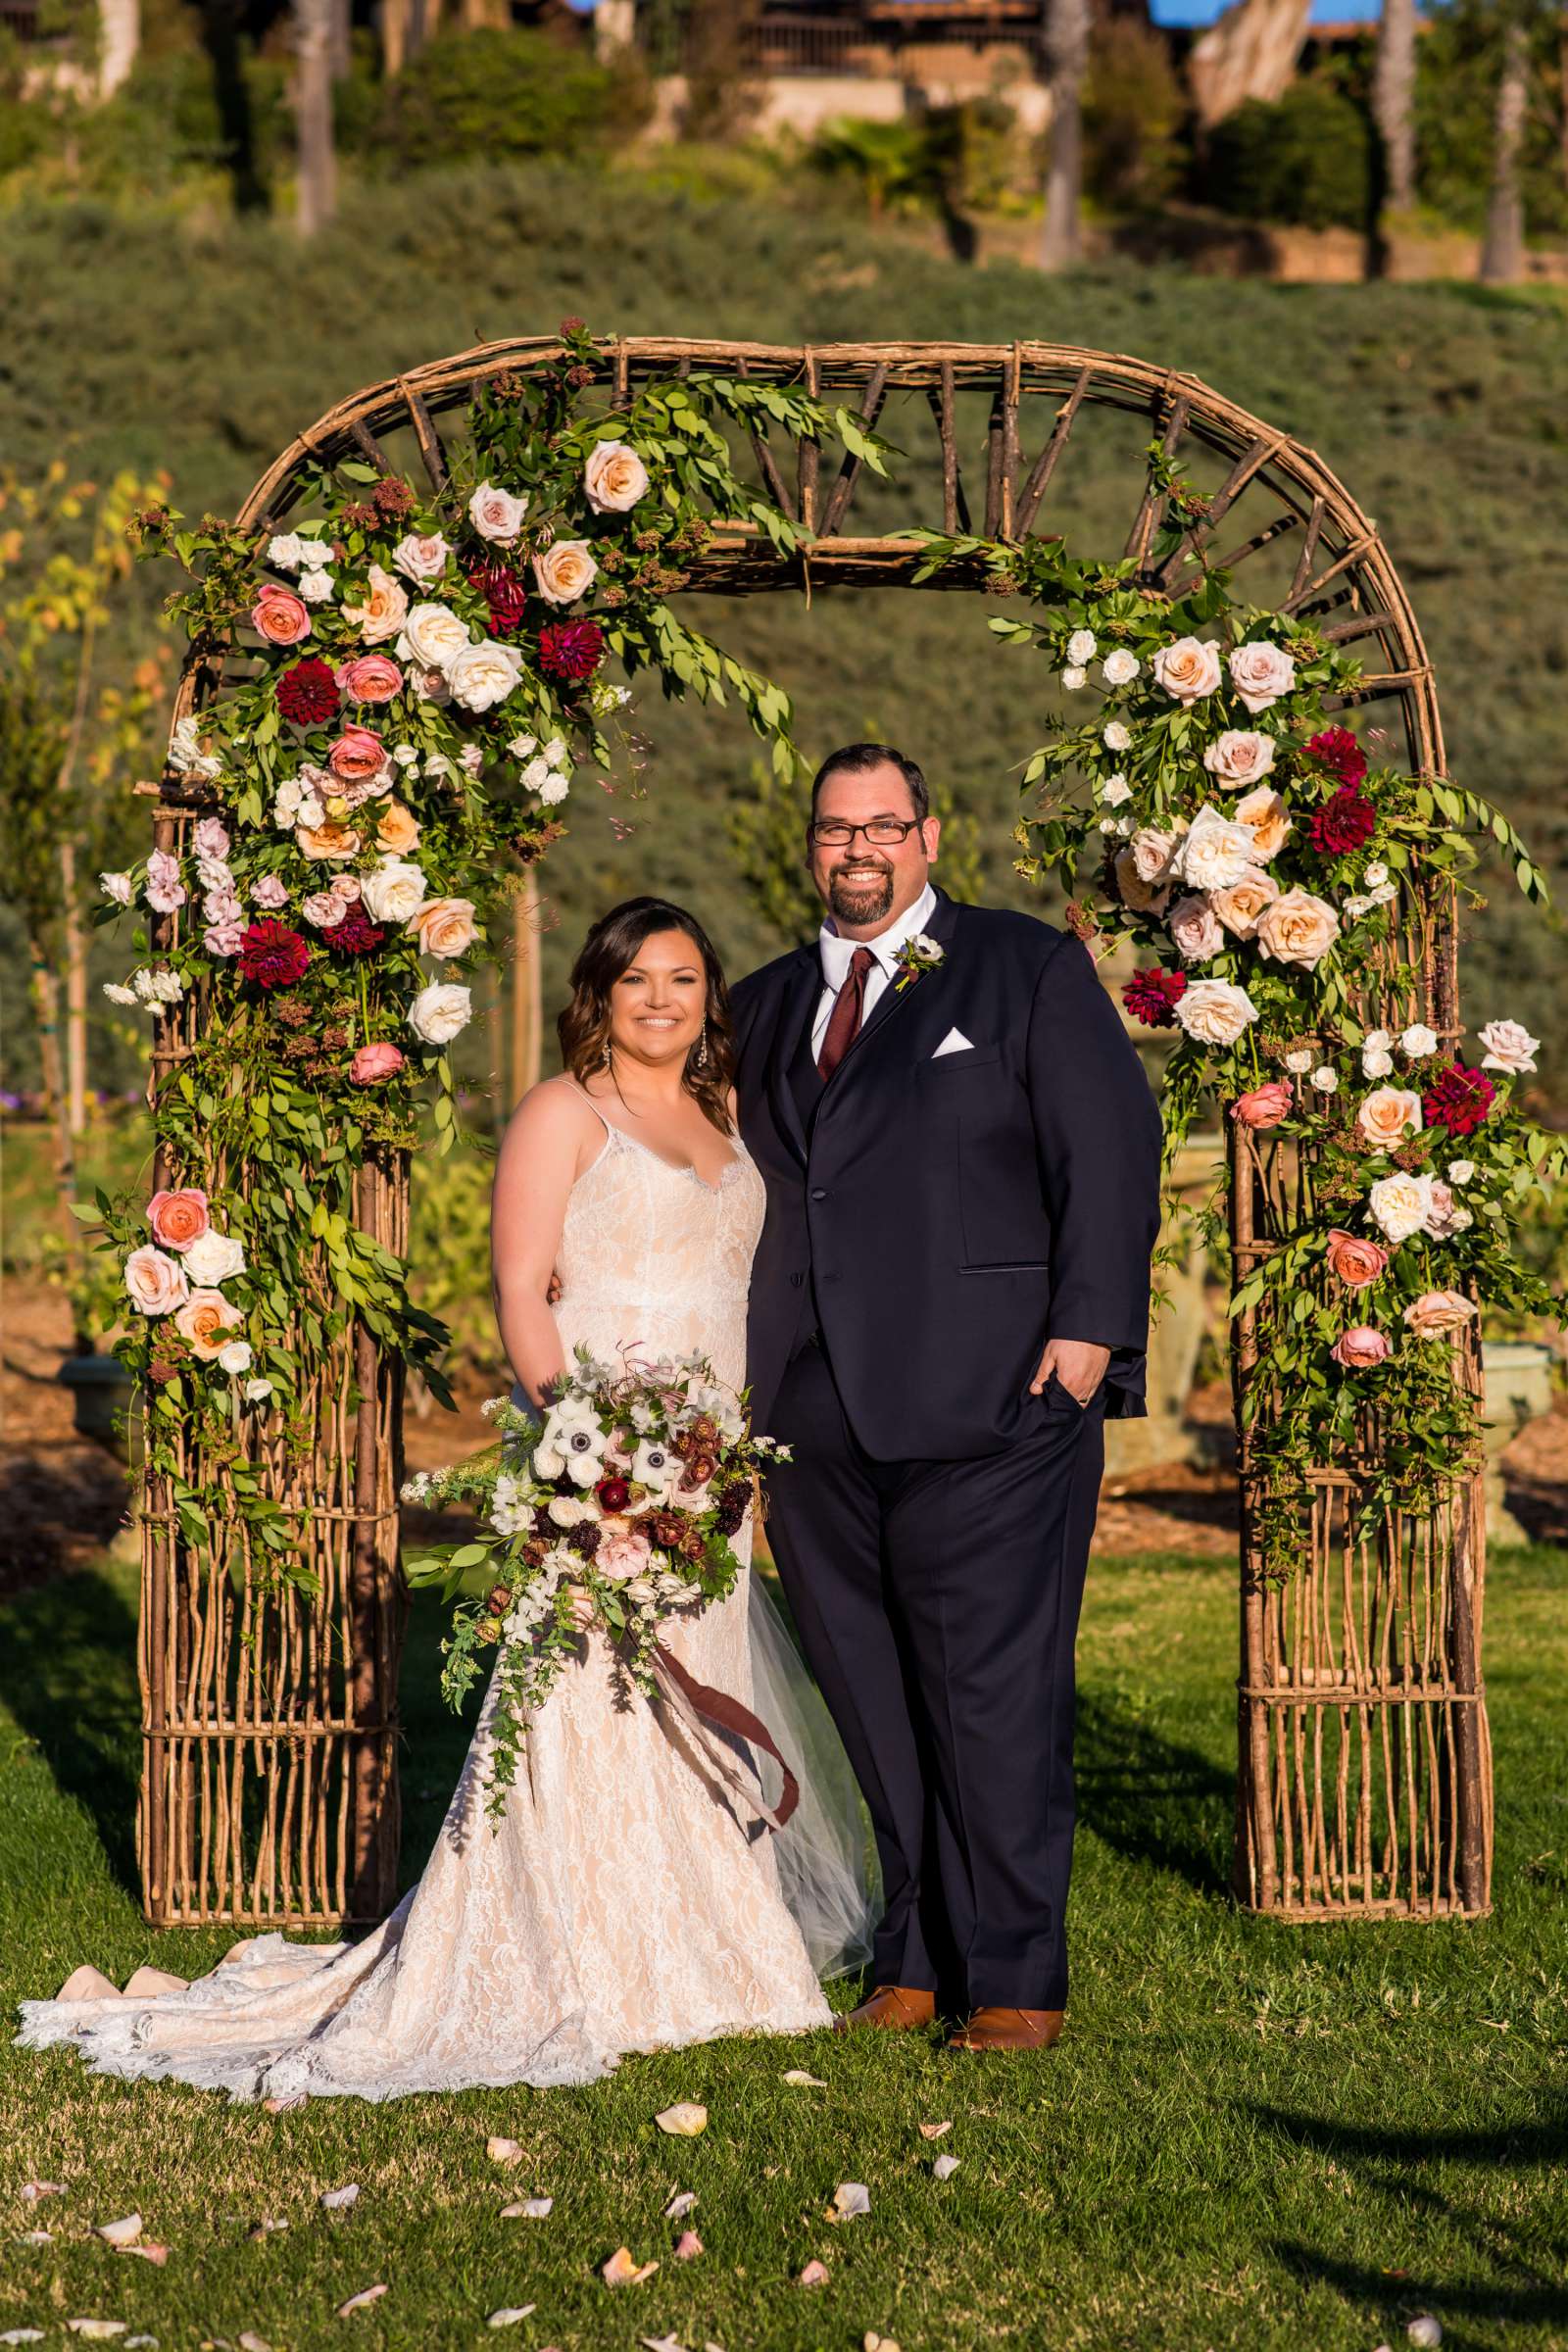 Ethereal Gardens Wedding, Lauren and Benjamin Wedding Photo #446557 by True Photography